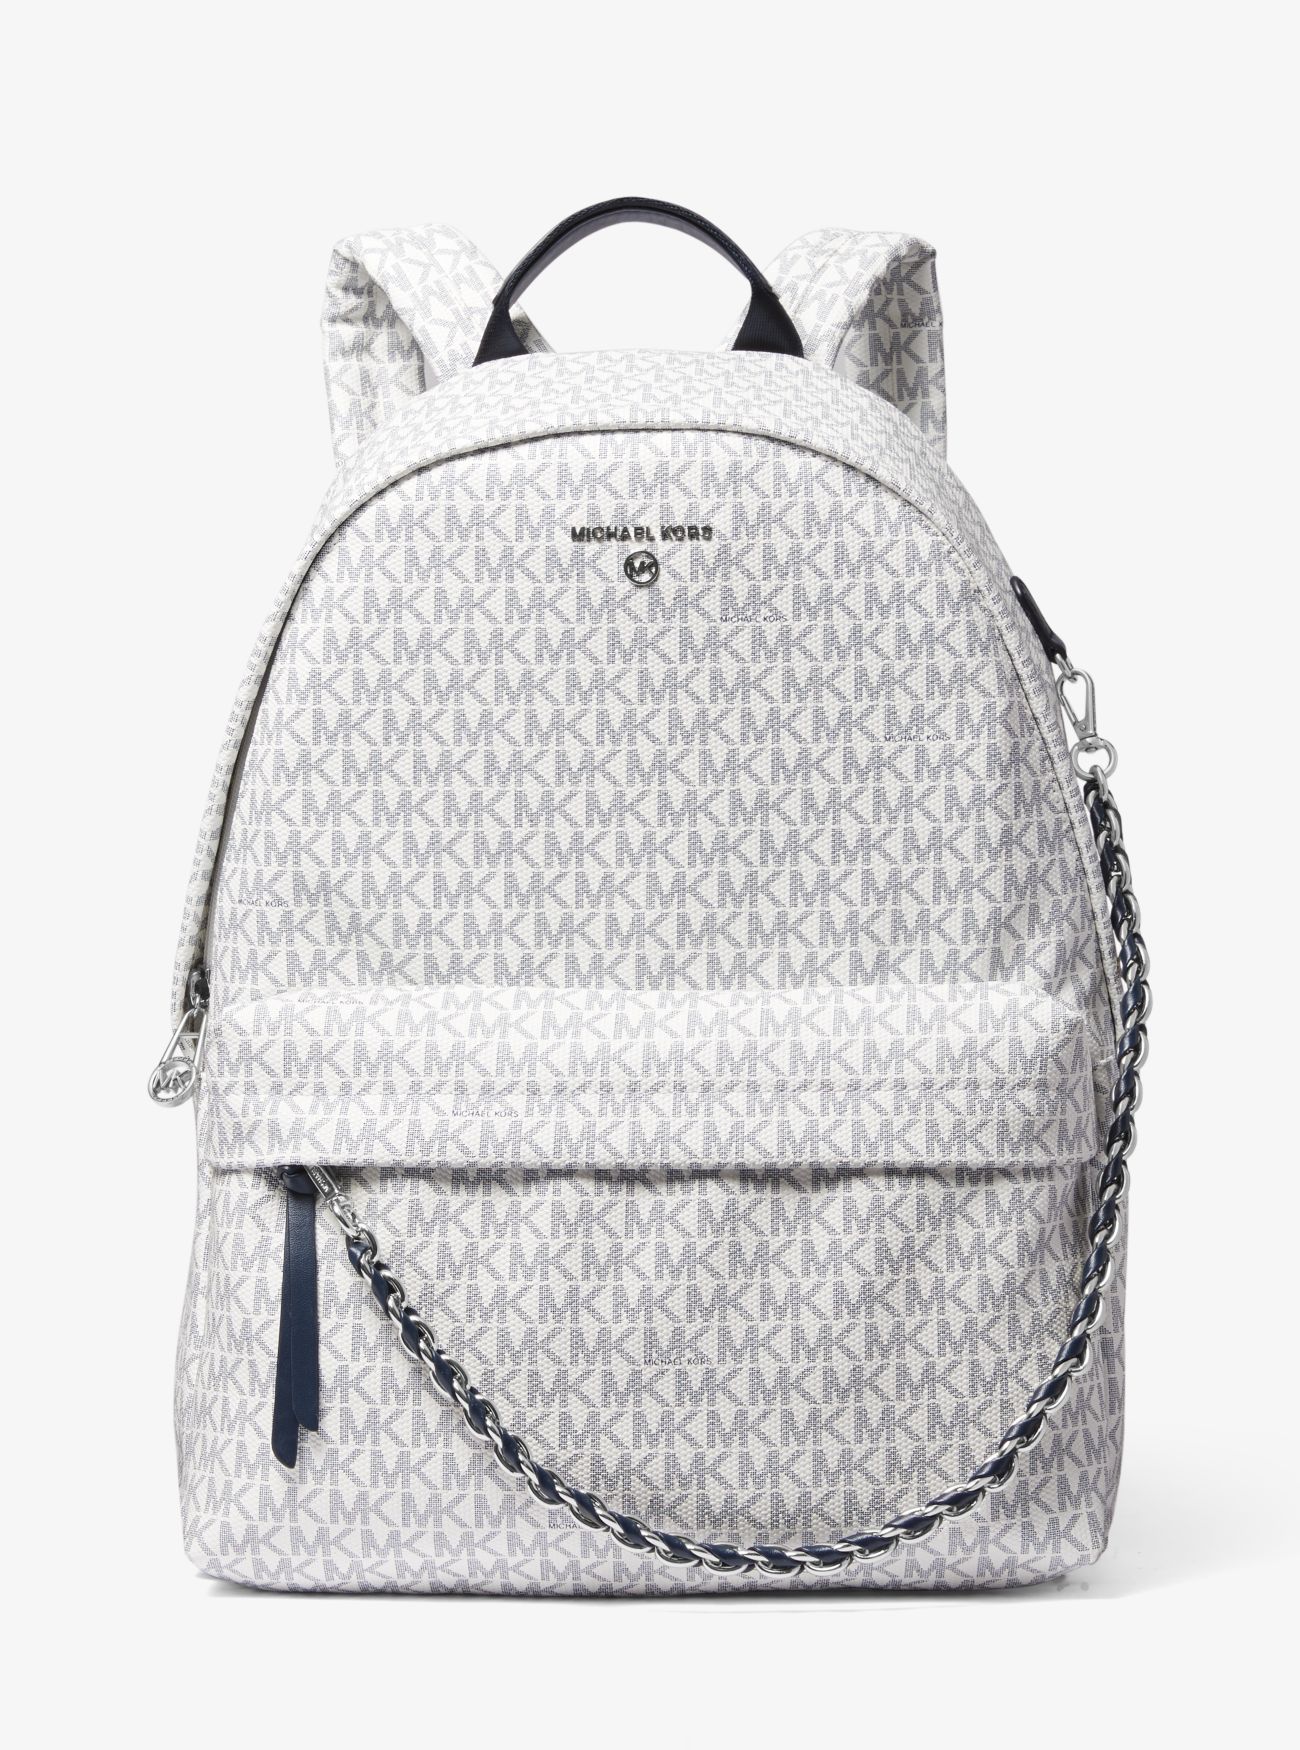 MK Slater Large Logo Backpack - Navy/white - Michael Kors